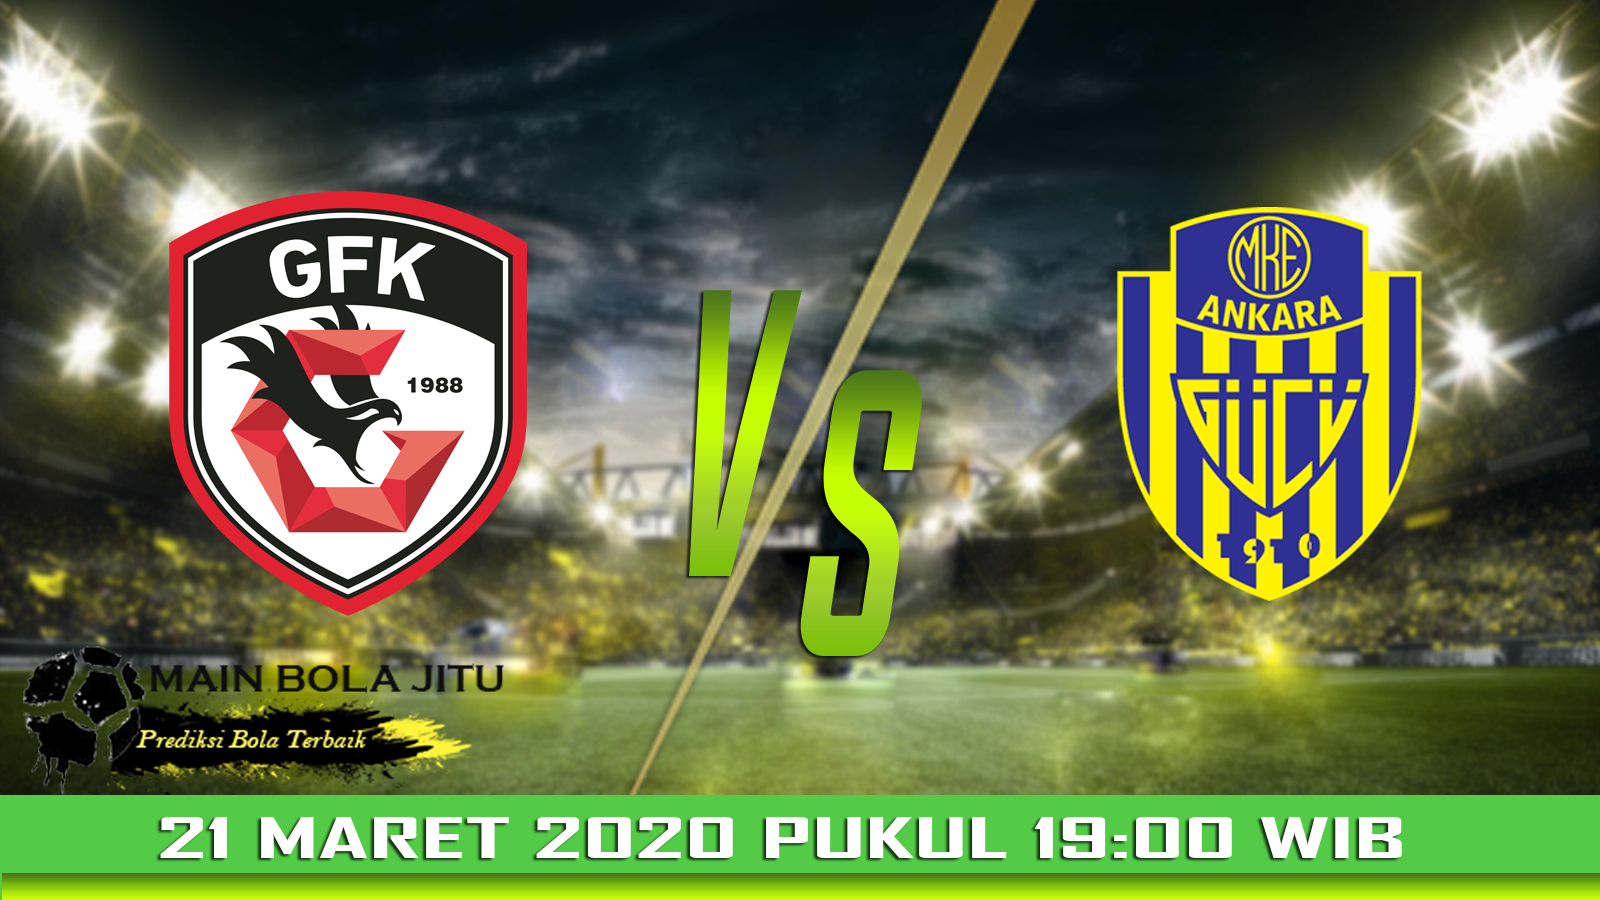 Prediksi Bola Gazisehir Gaziantep vs Ankaragucu tanggal 21-03-2020